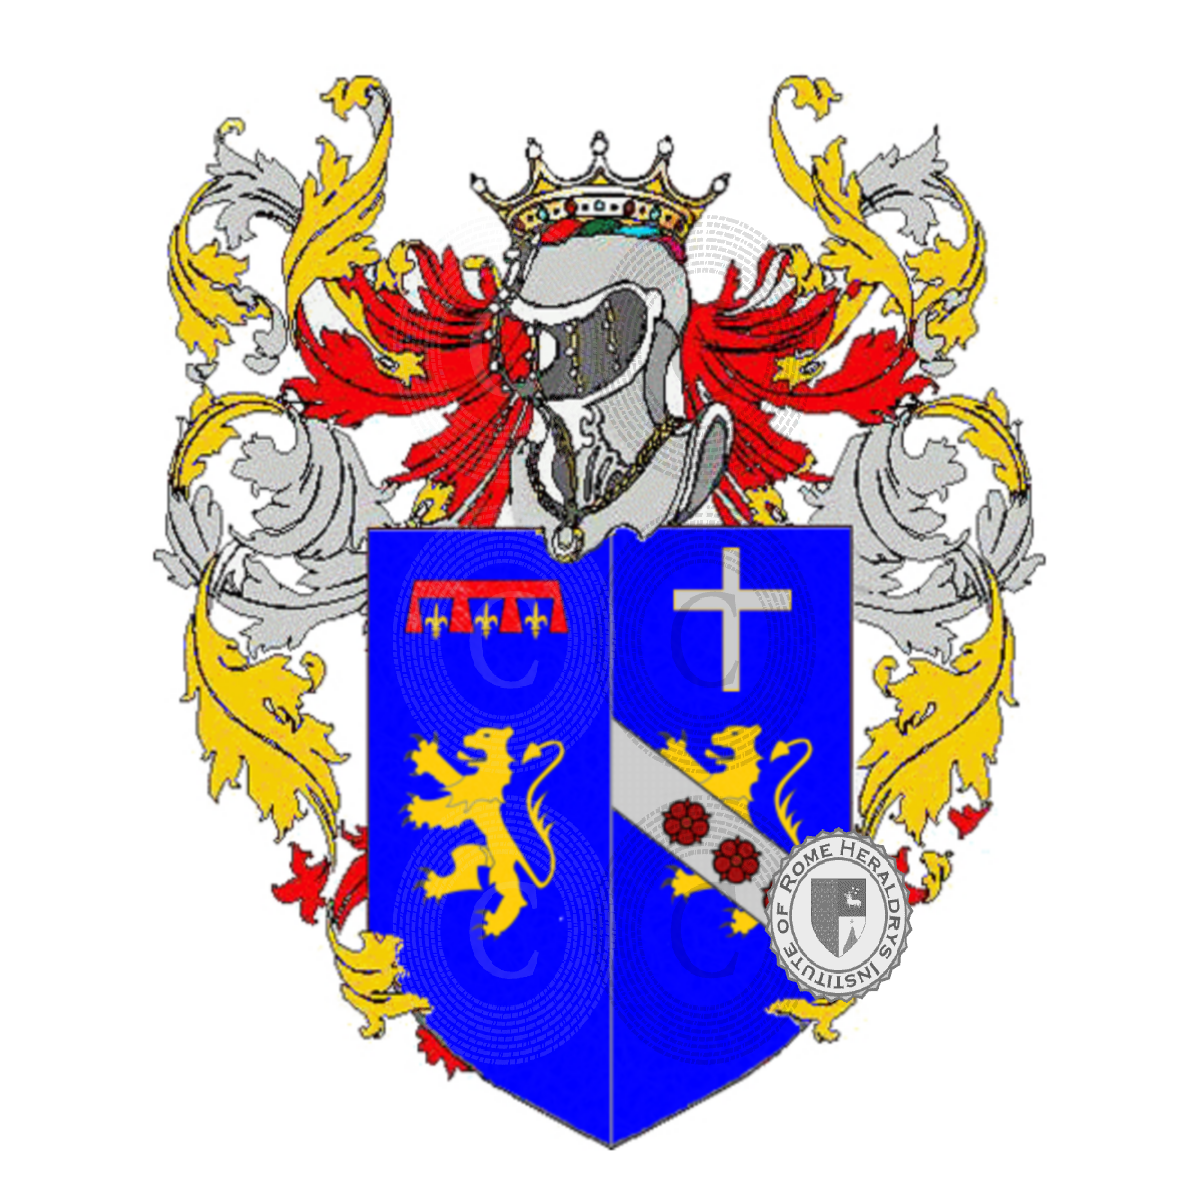 Wappen der Familiemidolo del luca